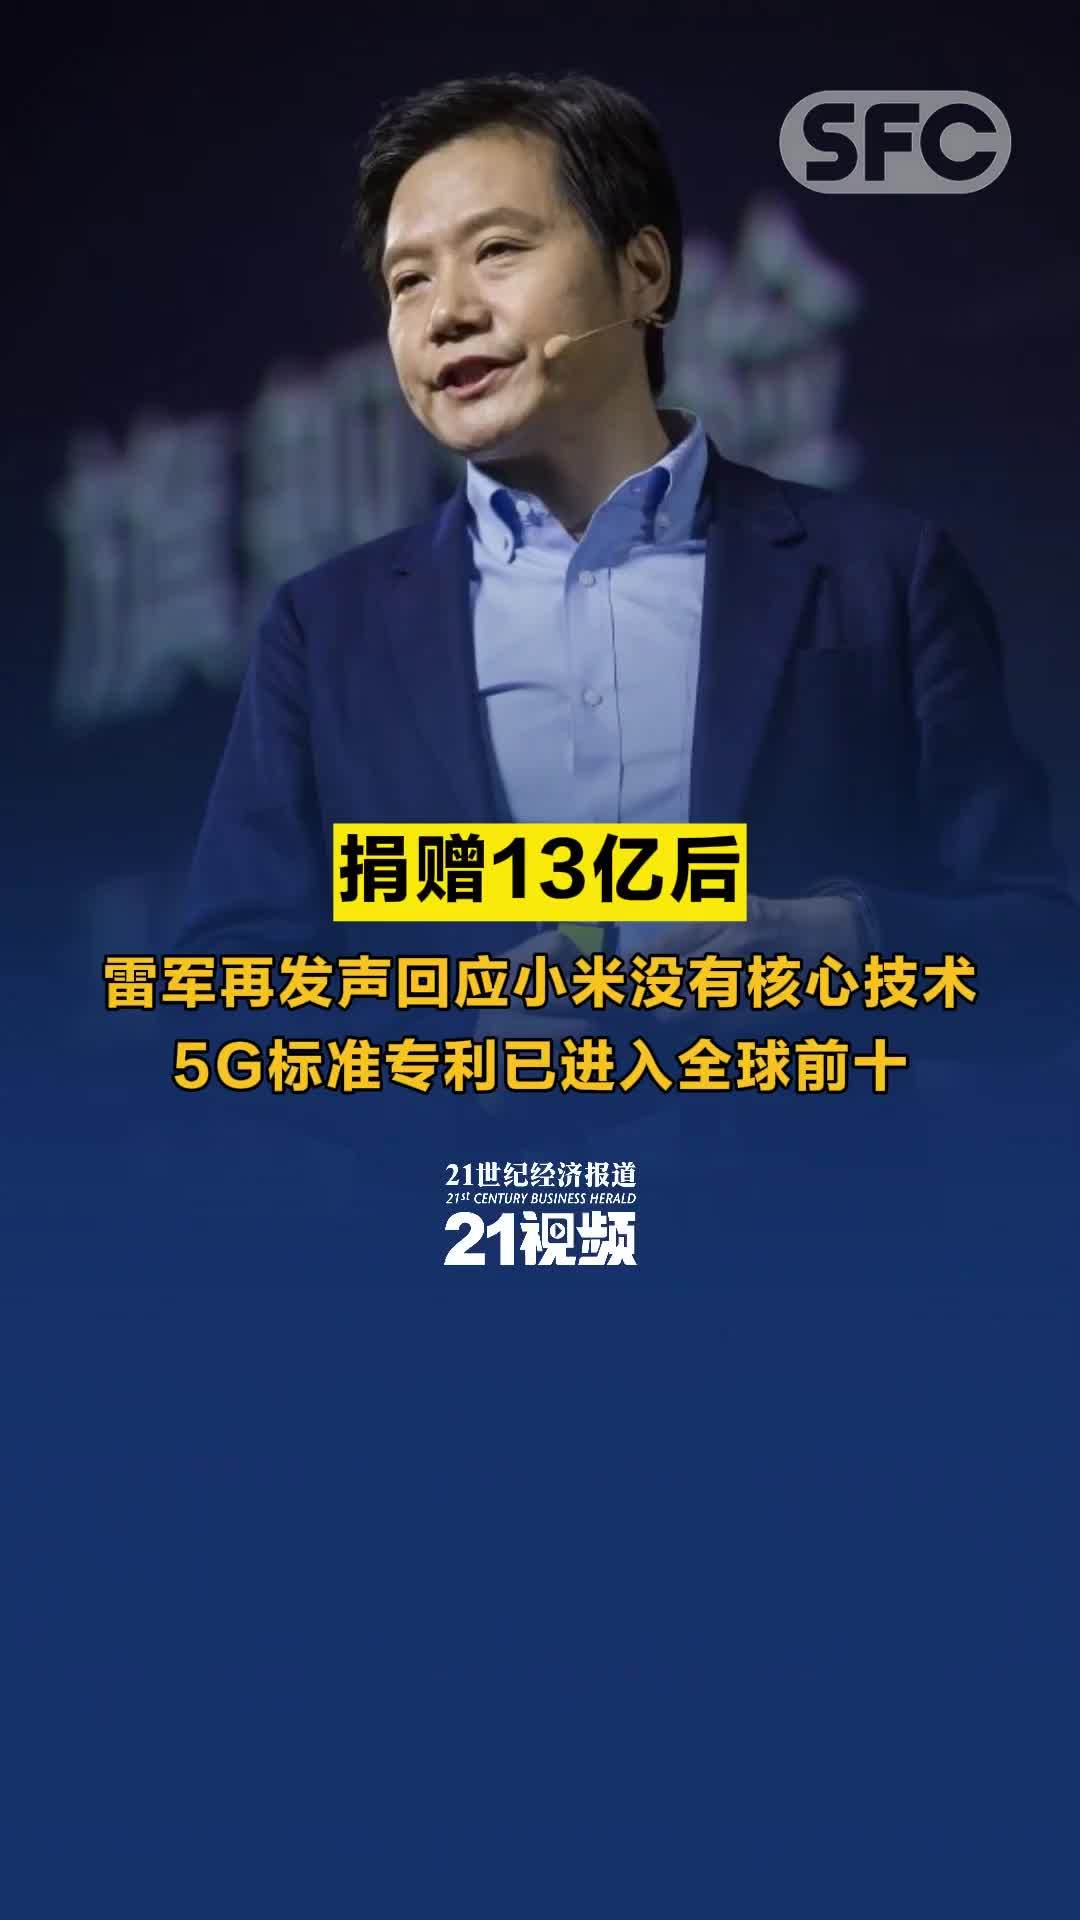 雷军豪言要重夺中国手机市场第一，营收破千亿比阿里腾讯快10年！